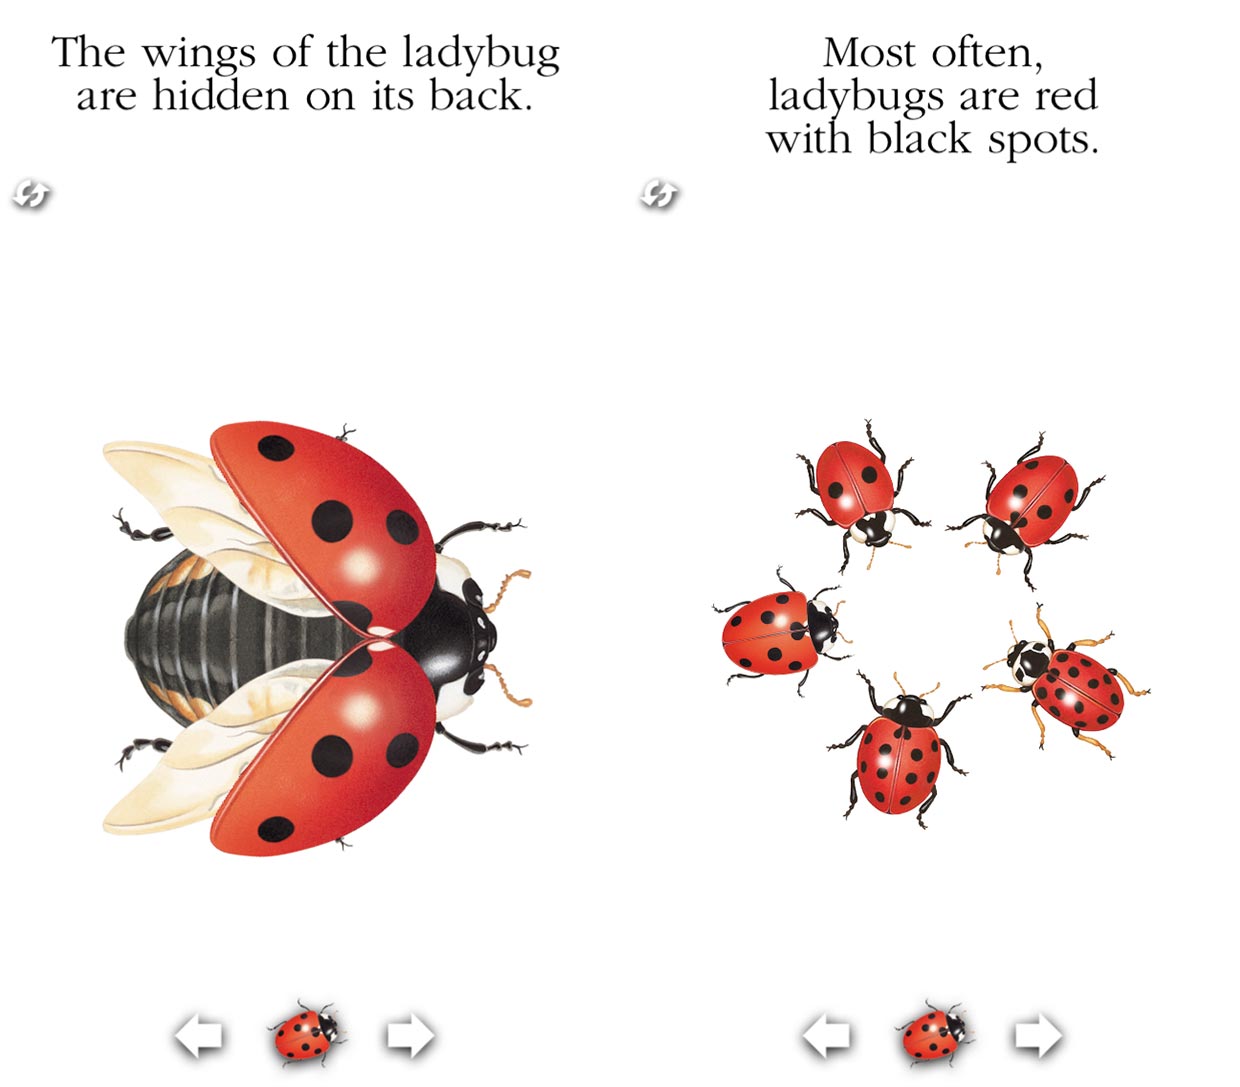 Ladybug bodyparts